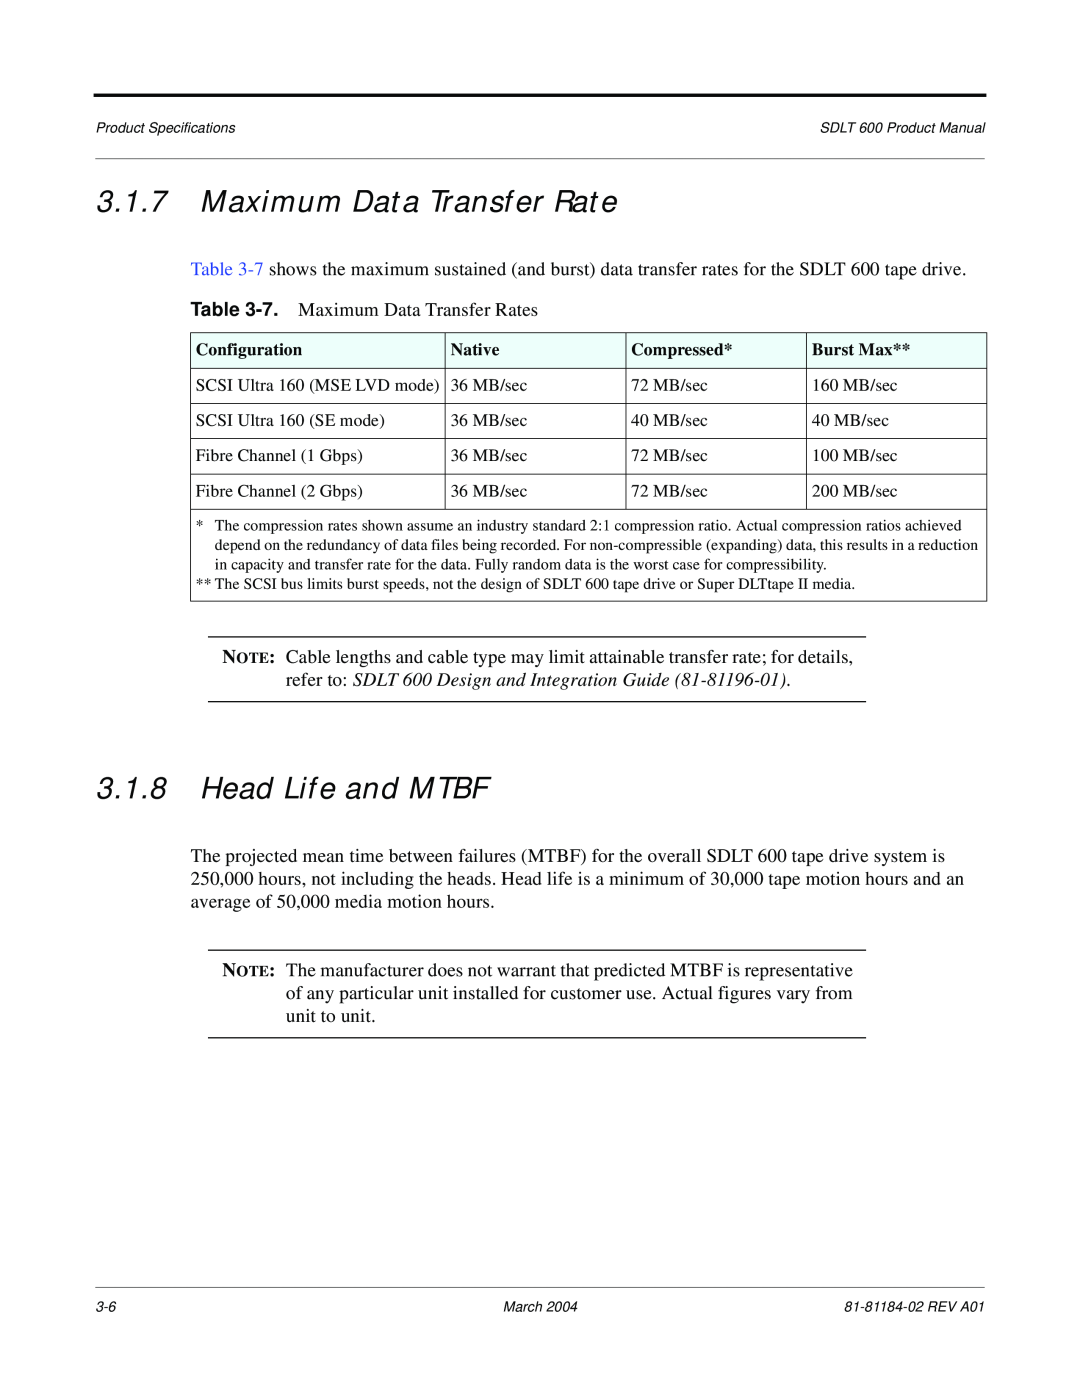 Tandberg Data 600 manual Maximum Data Transfer Rate, Head Life and MTBF 